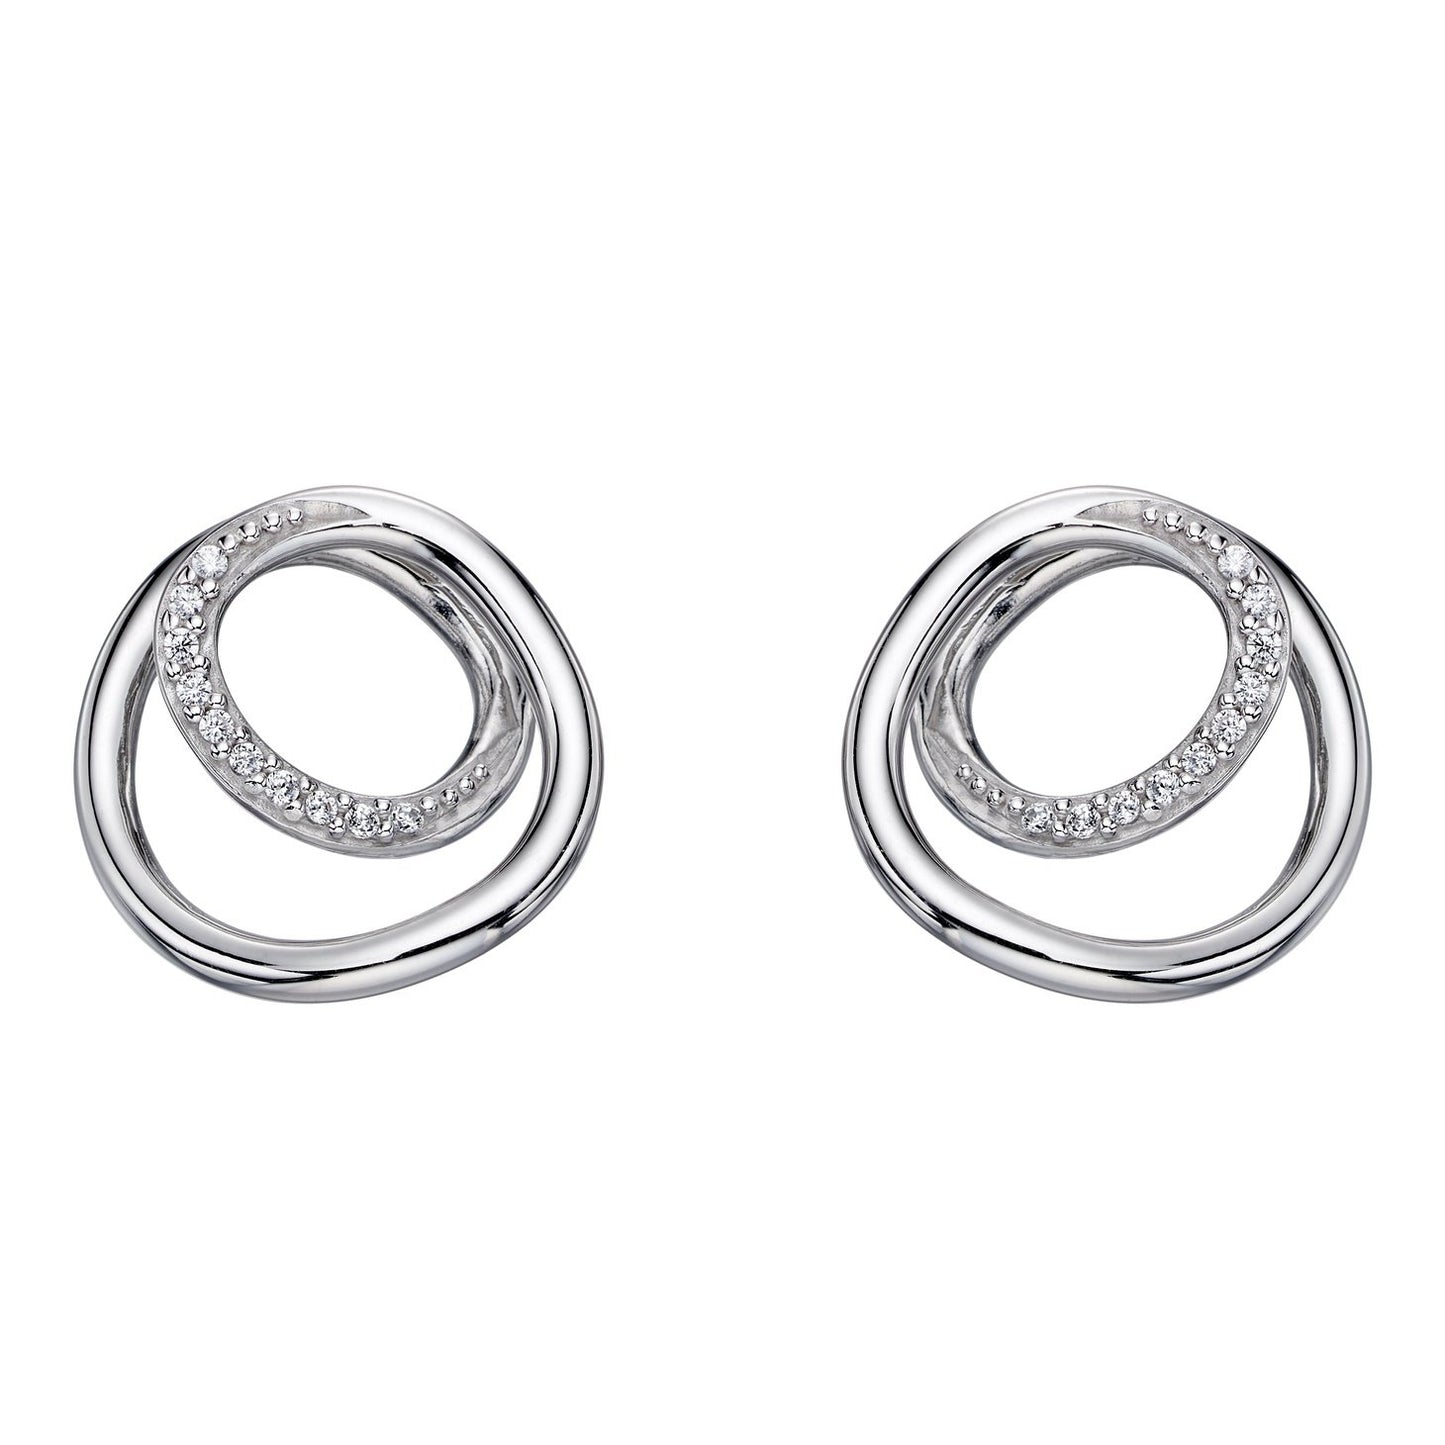 Fiorelli Silver & Cubic Zirconia Stud Earrings